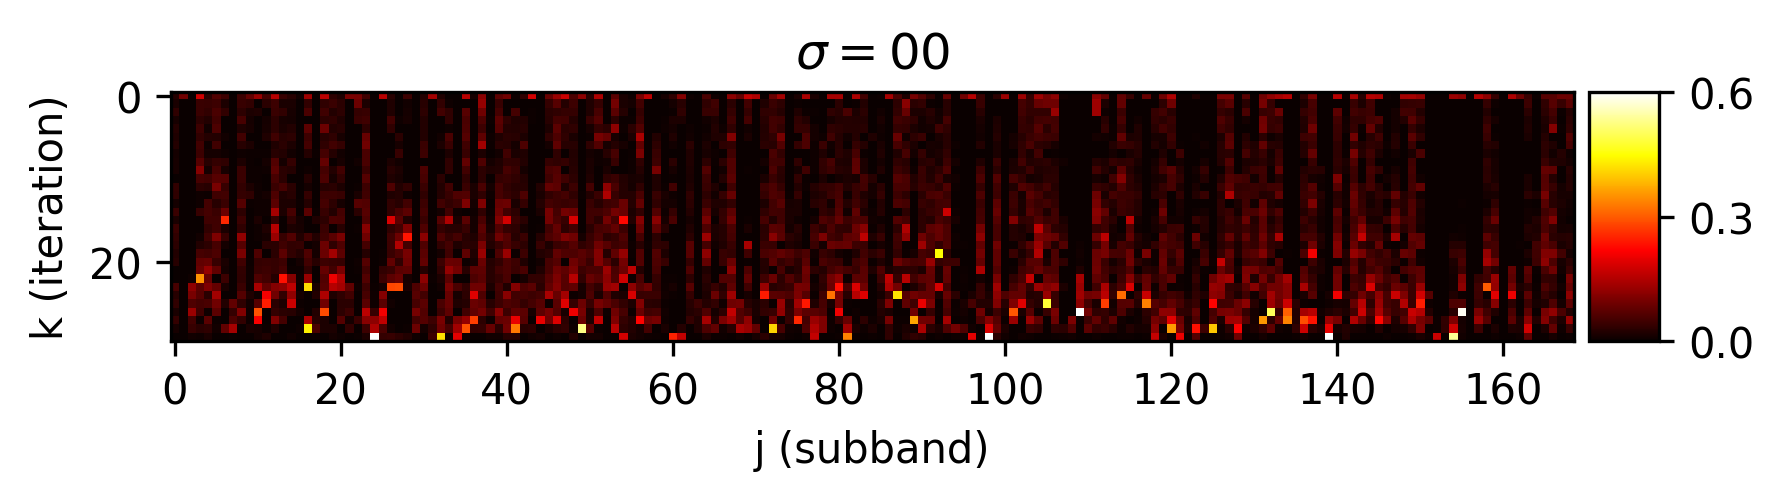  CDLNet trained on noise-level range [20,30]. Thresholds vary with noise-level.